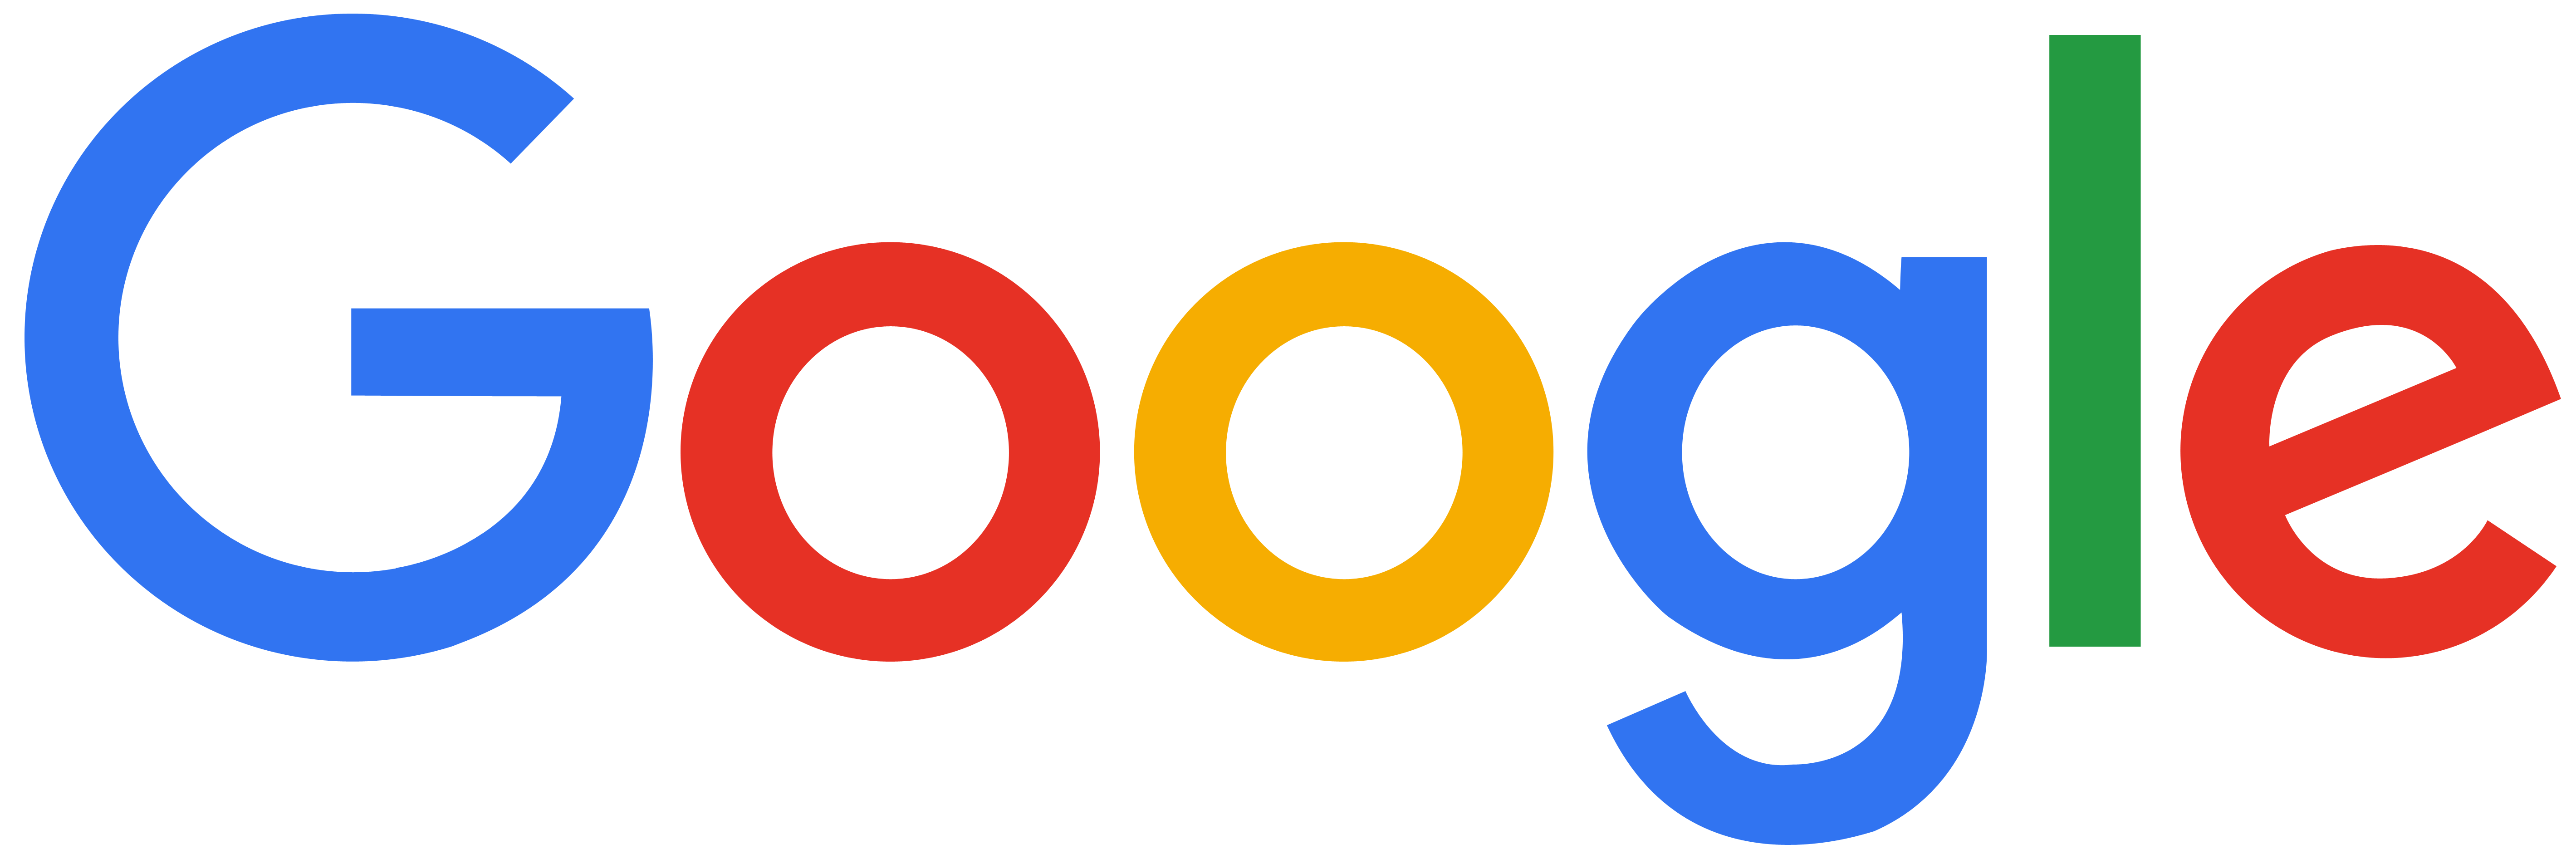 Google logo 2015 png, Google logo 2015 png Transparent FREE for